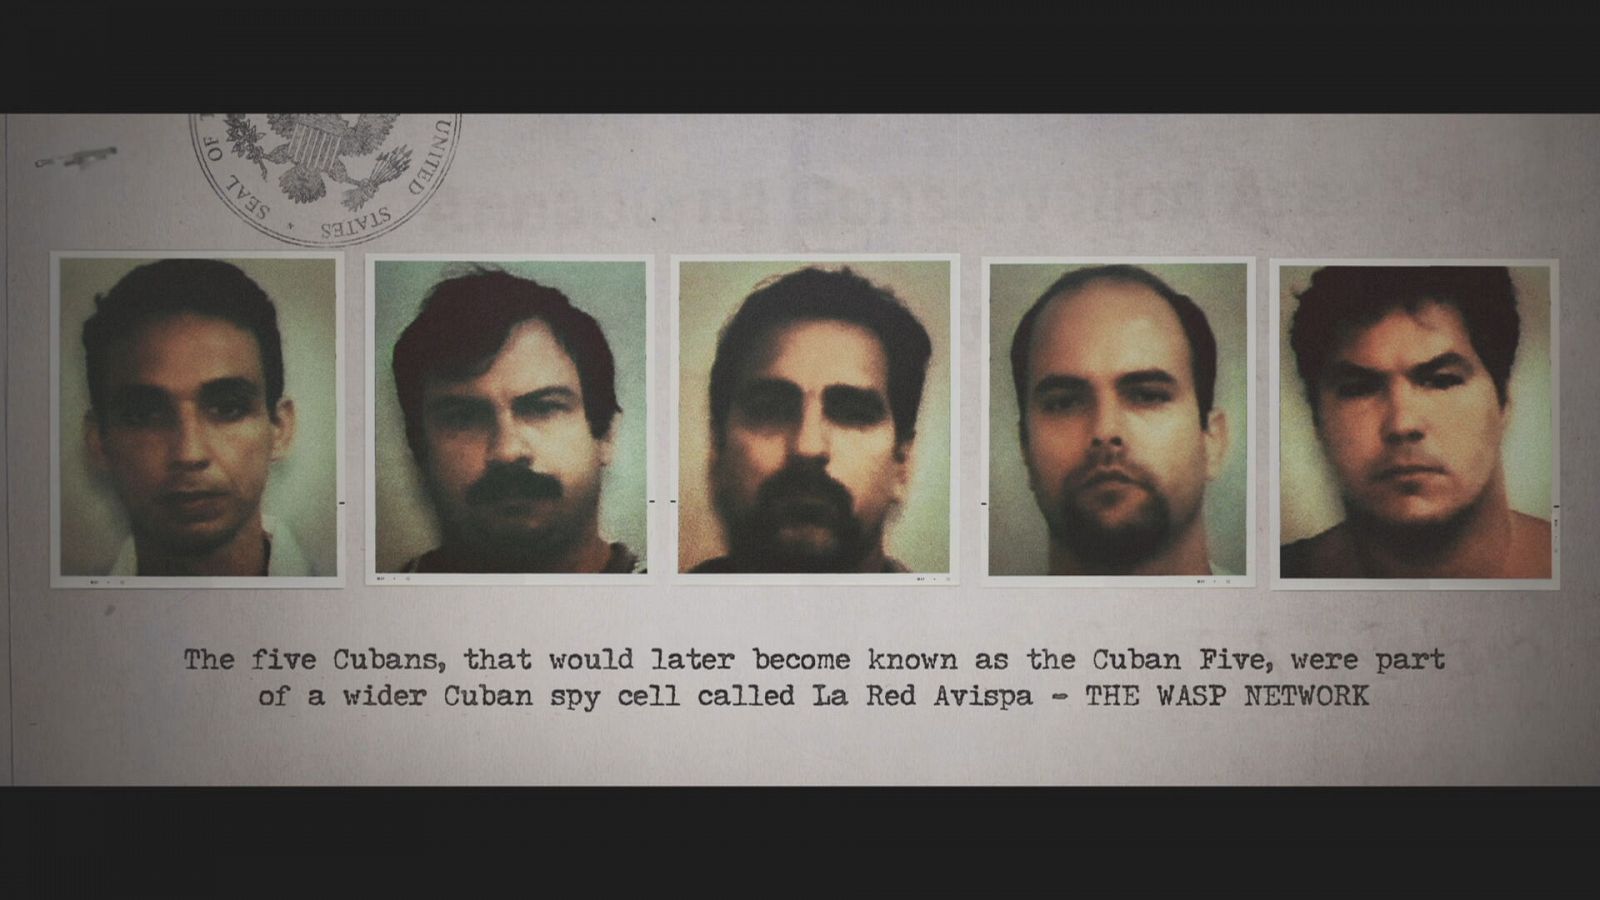 Fotografía de los espías conocidos como los "Cinco Cubanos"